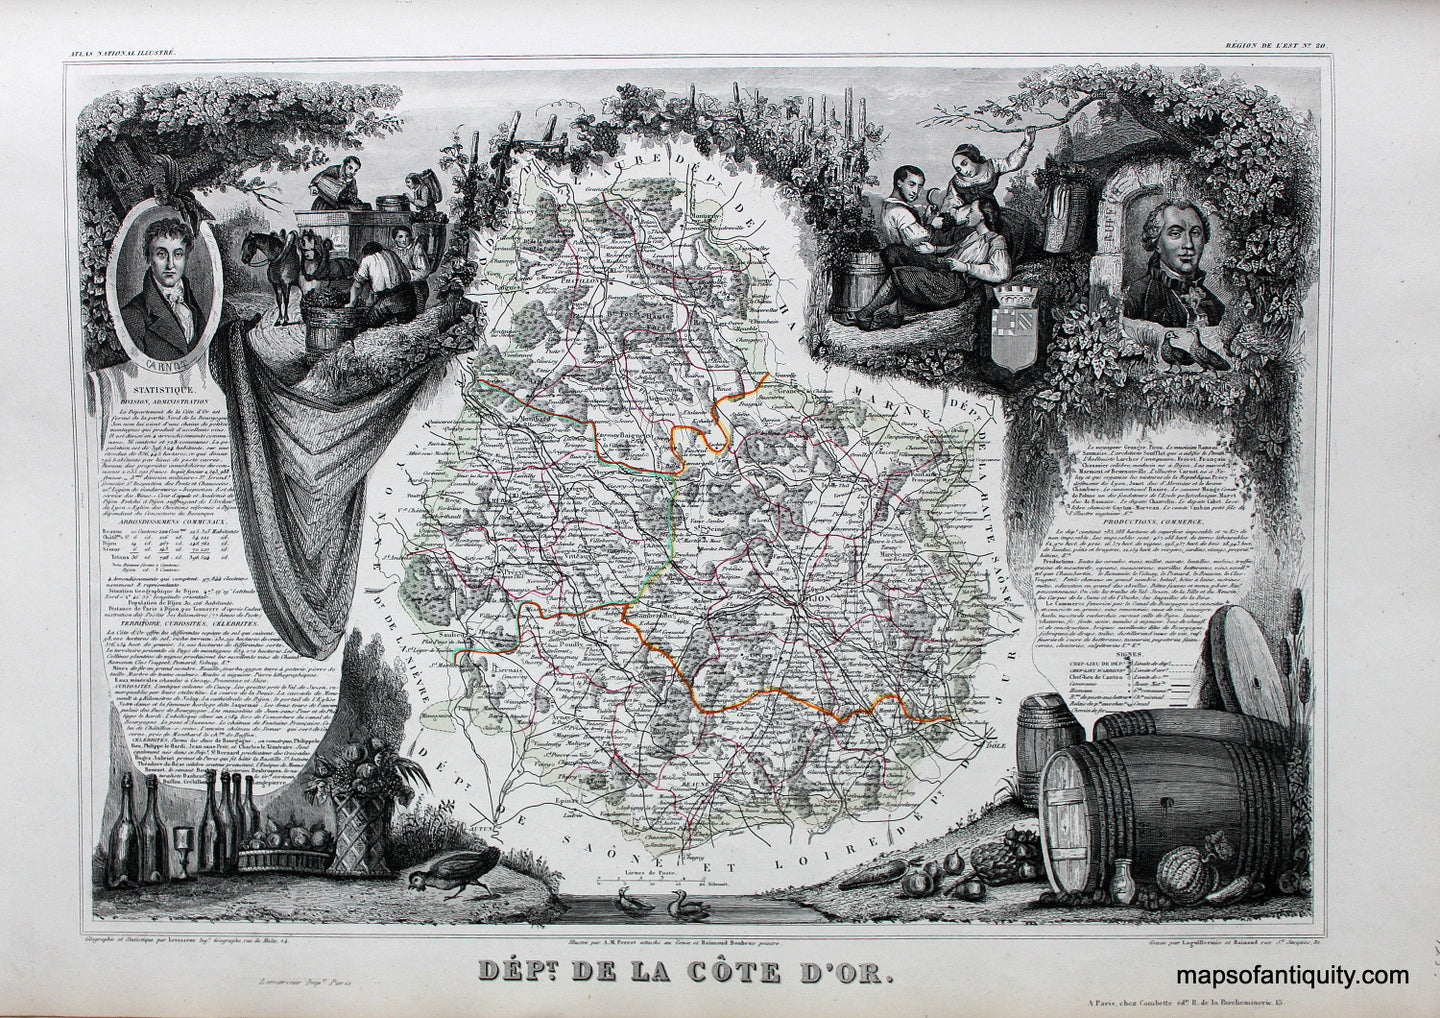 Antique-Hand-Colored-Map-Dept.-de-la-Cote-D'Or.-Europe-France-1851-Levasseur-Maps-Of-Antiquity